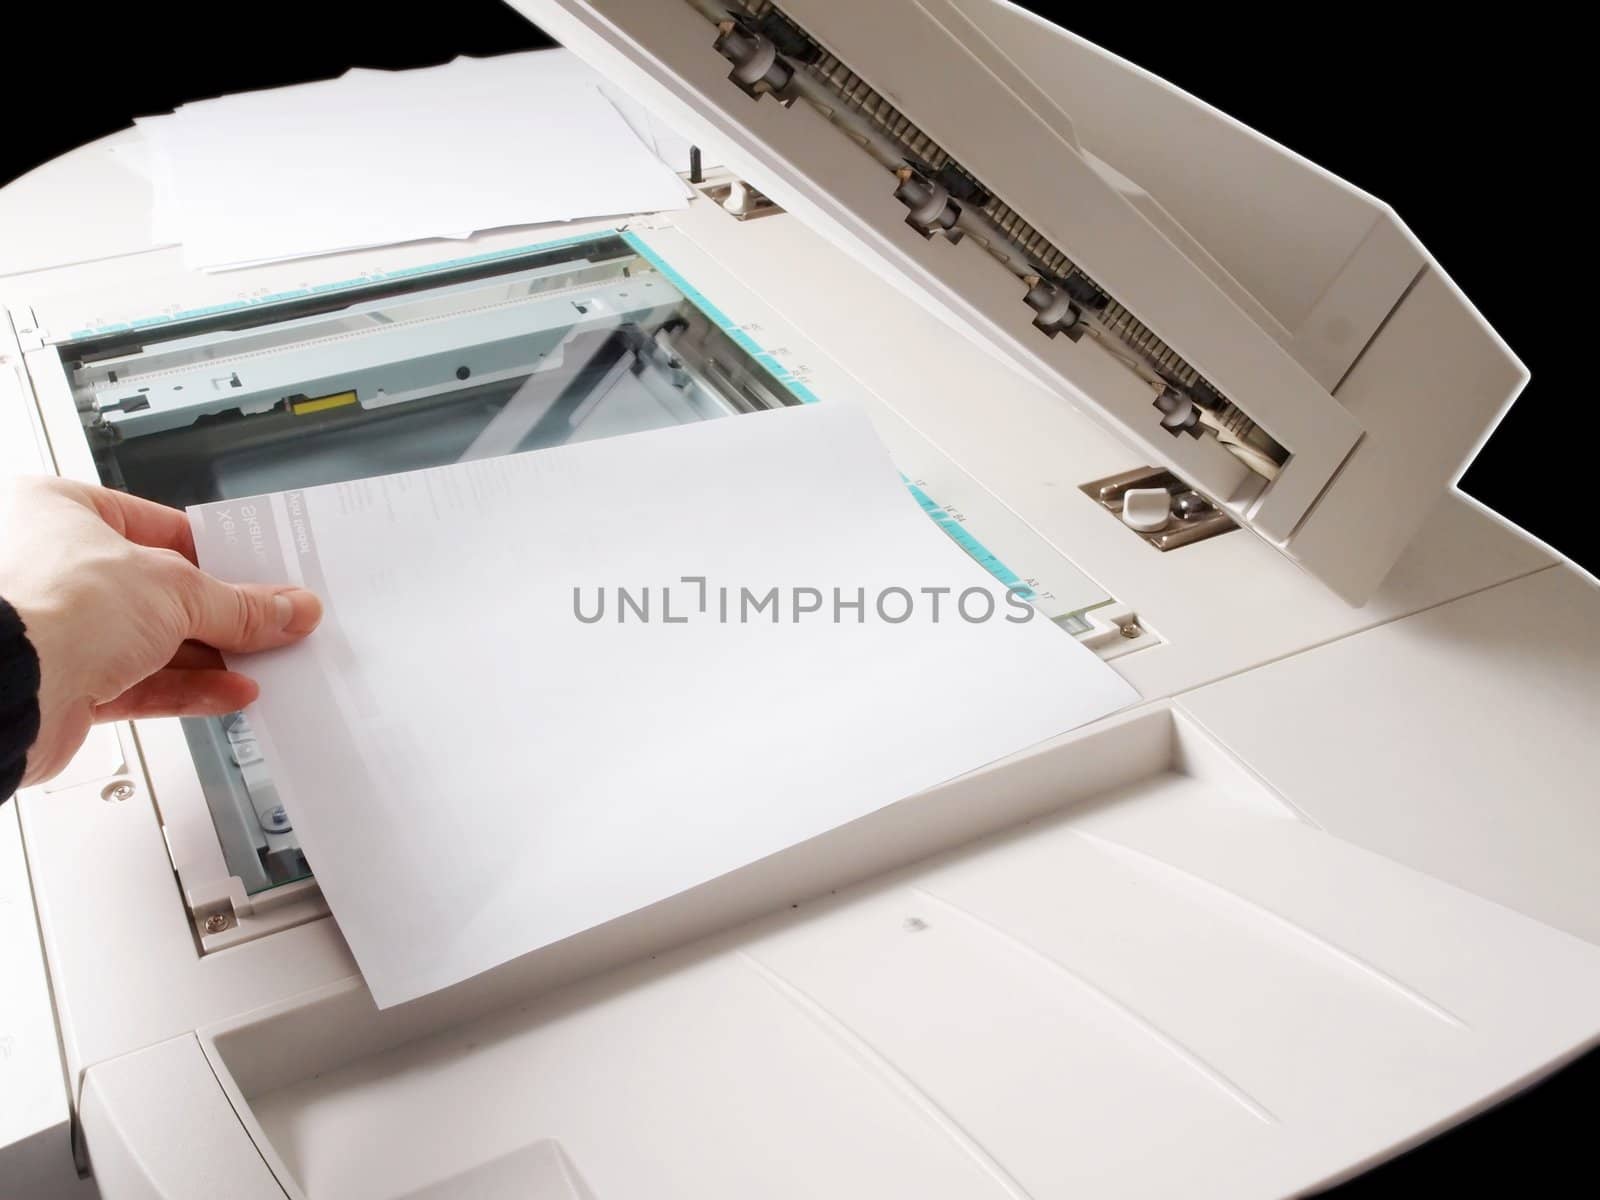 A person handling a multi purpose copier machine